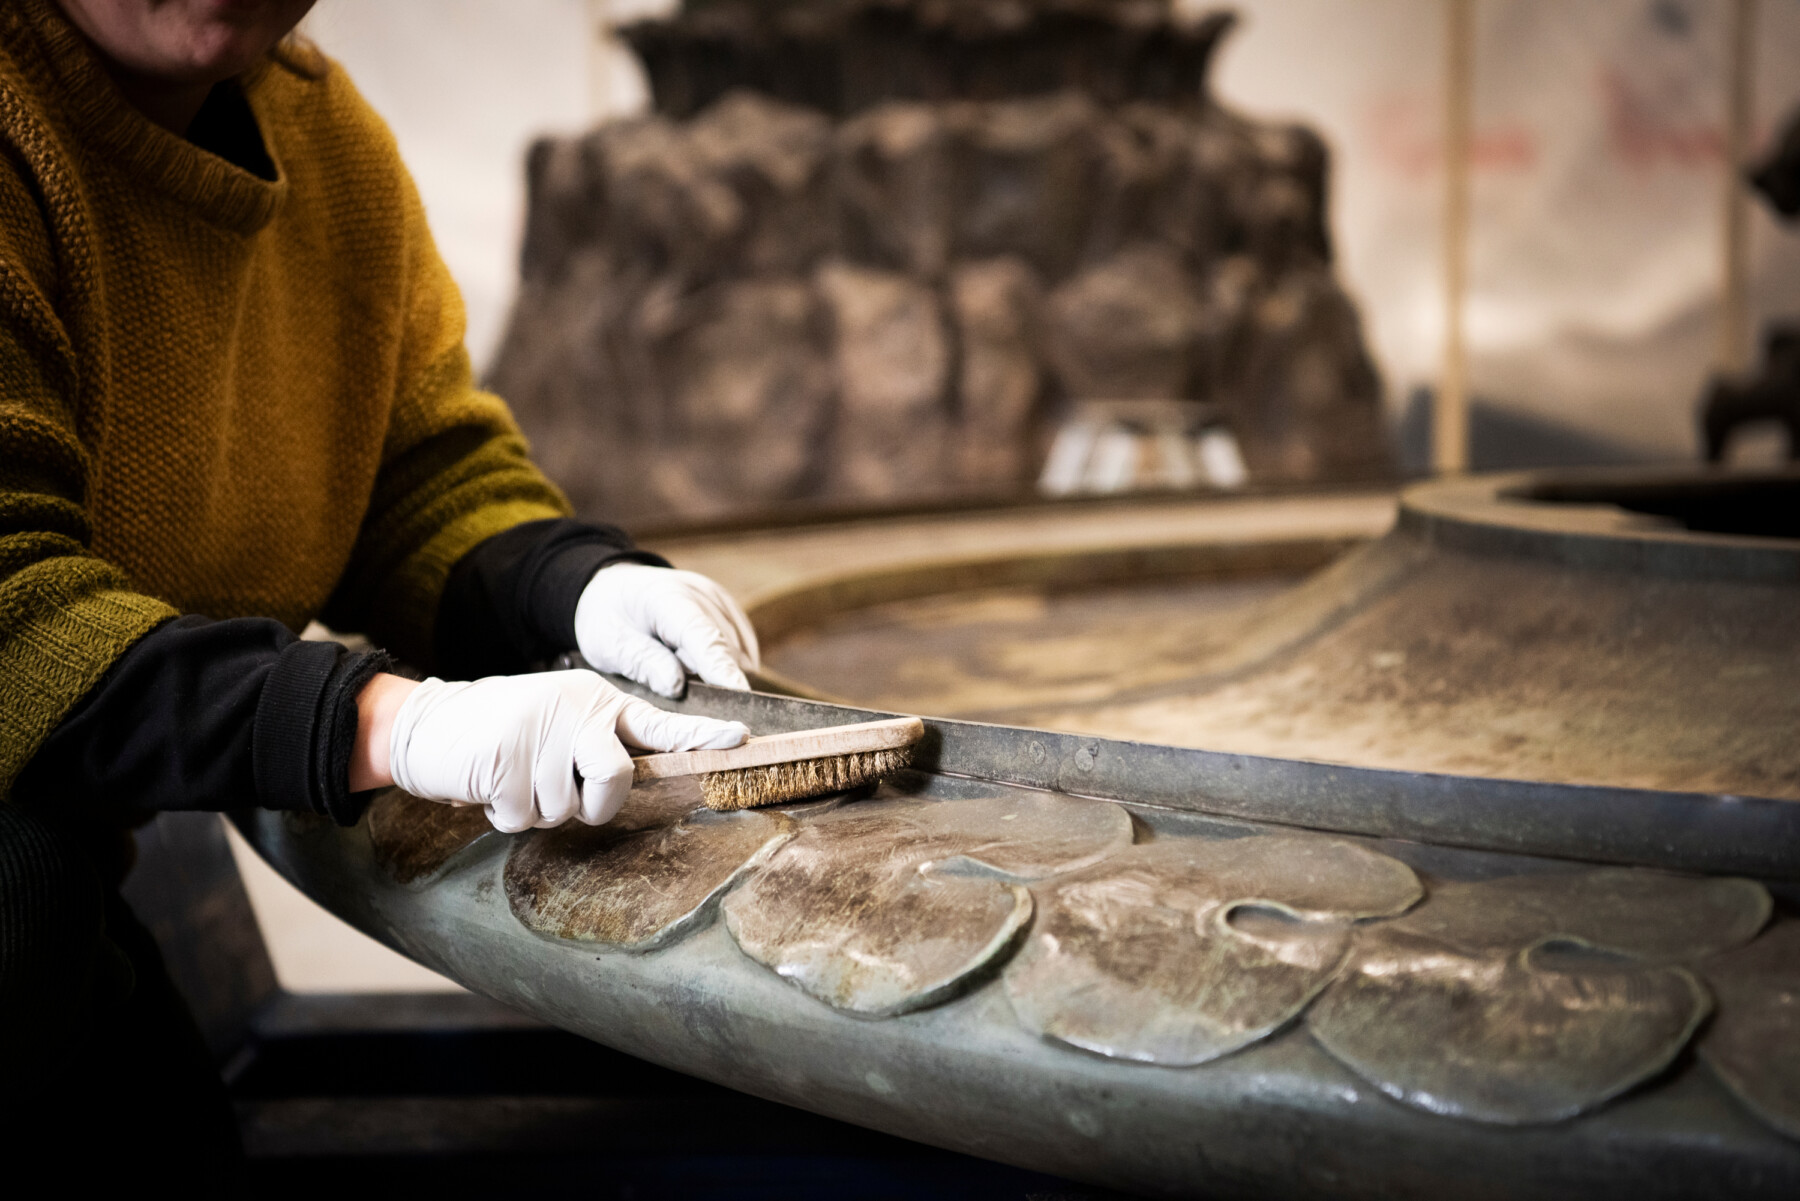 Primer plano de unas manos enguantadas que están utilizando un cepillo metálico para limpiar los motivos en forma de hoja alrededor del pedestal de una escultura de bronce.